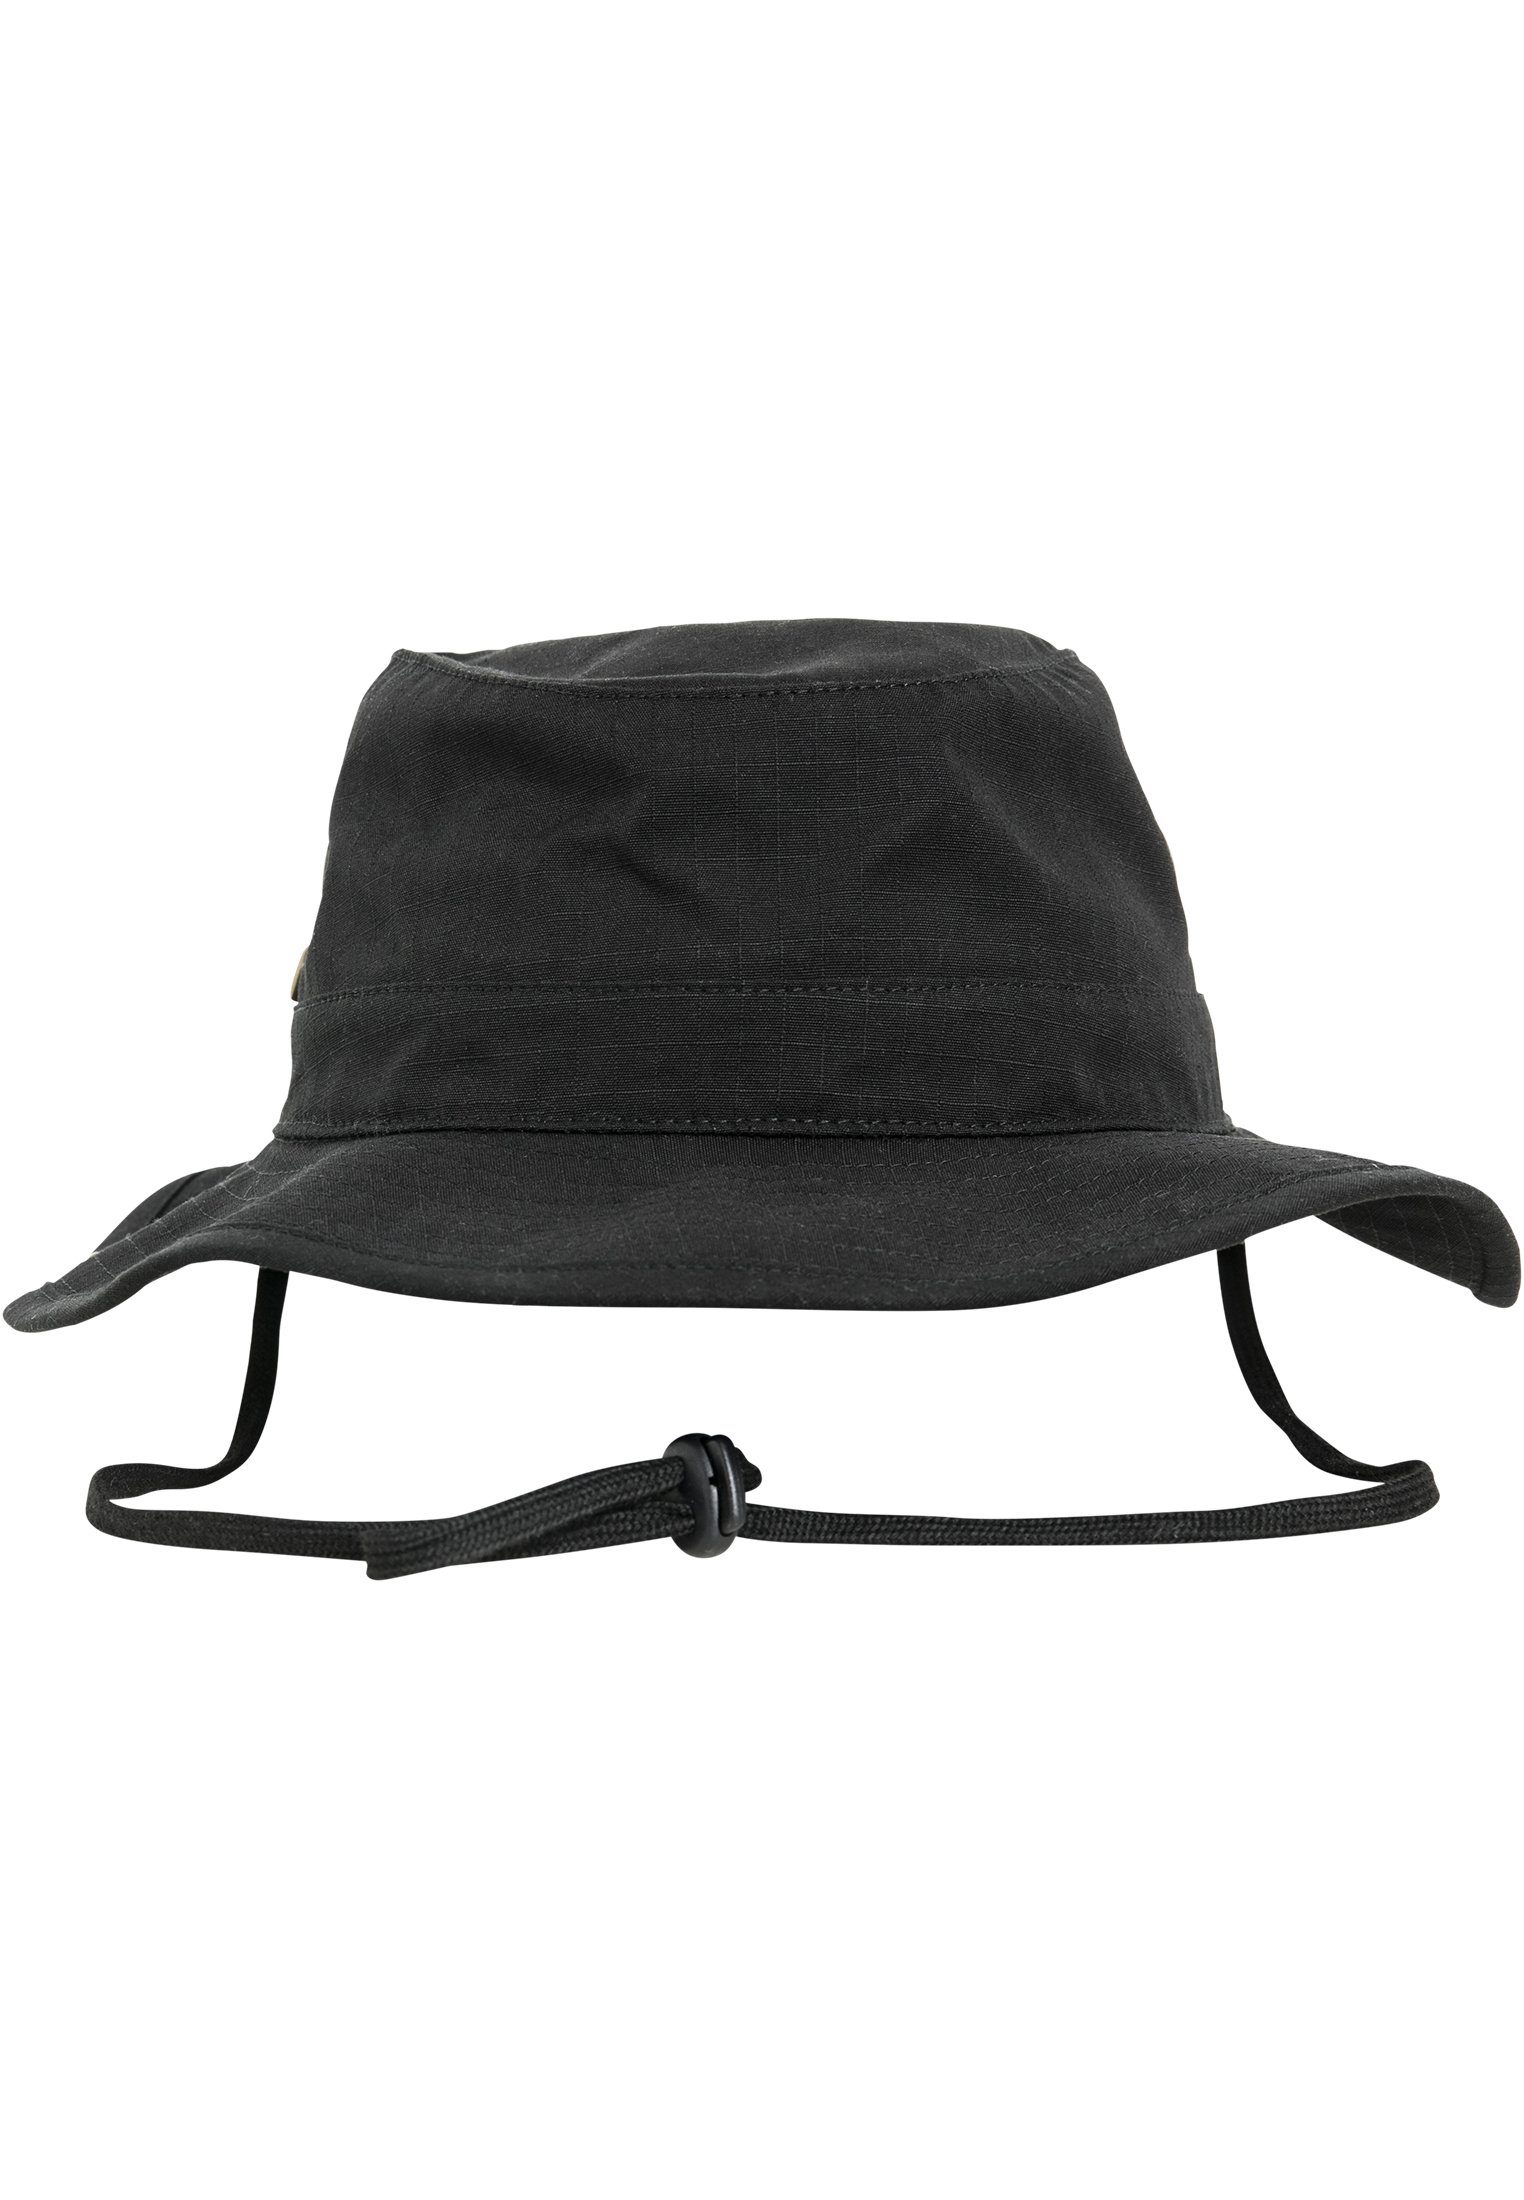 Flex Angler Flexfit Cap Hat